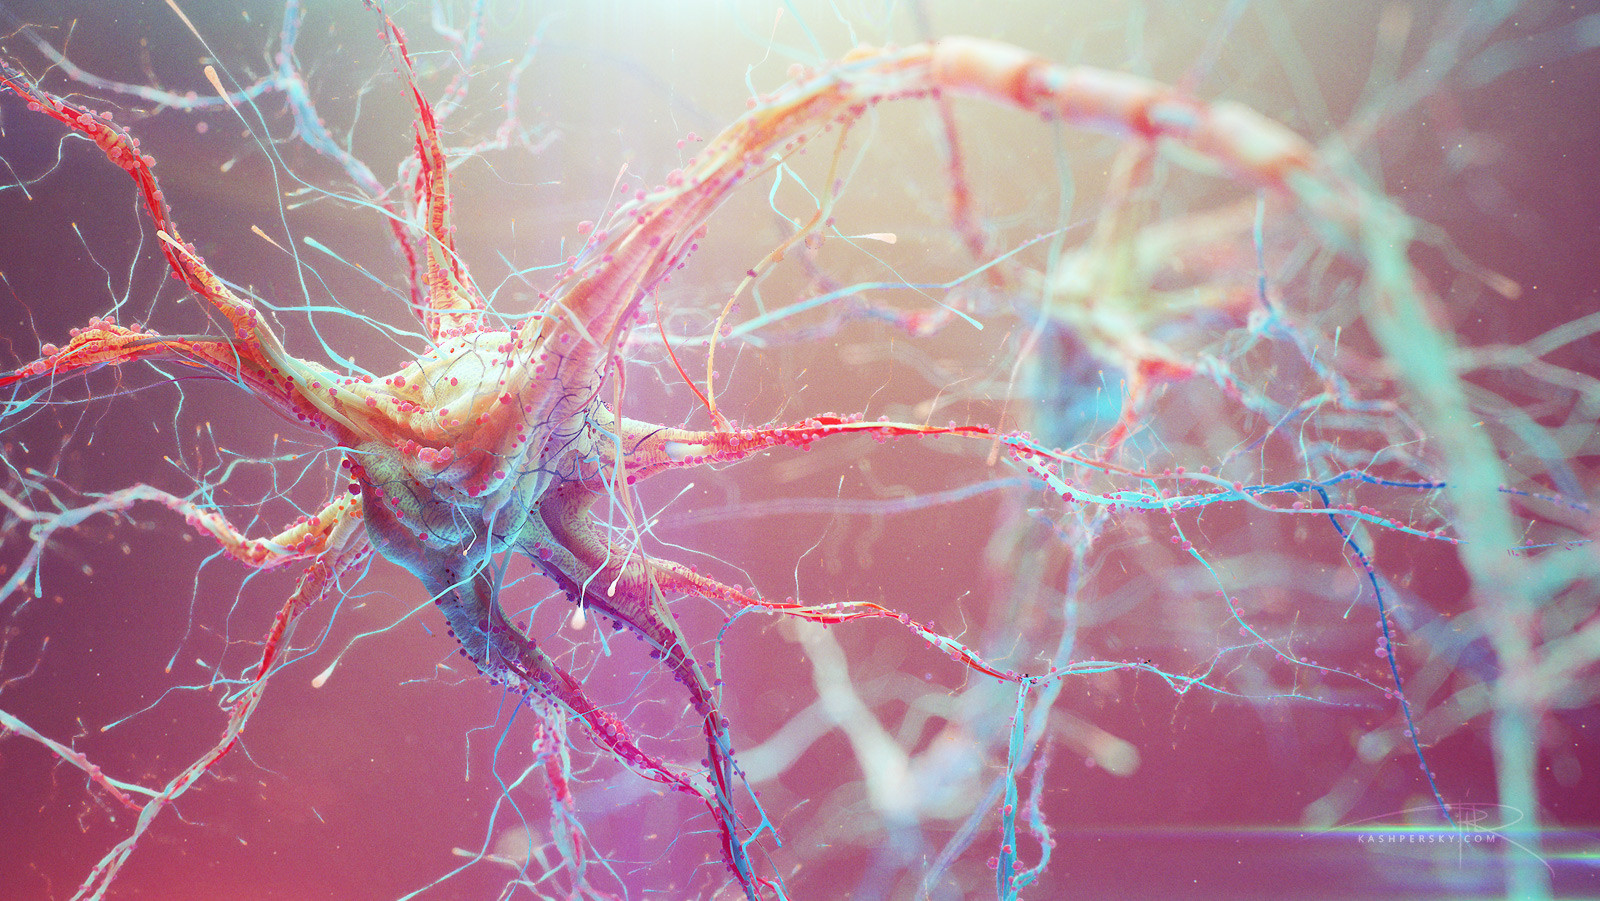 Разрушение клеток организма. Нейрон клетка головного мозга. Нейроны и нейронные связи. Нервная система человека Нейрон. Нейроны фон Экономо.